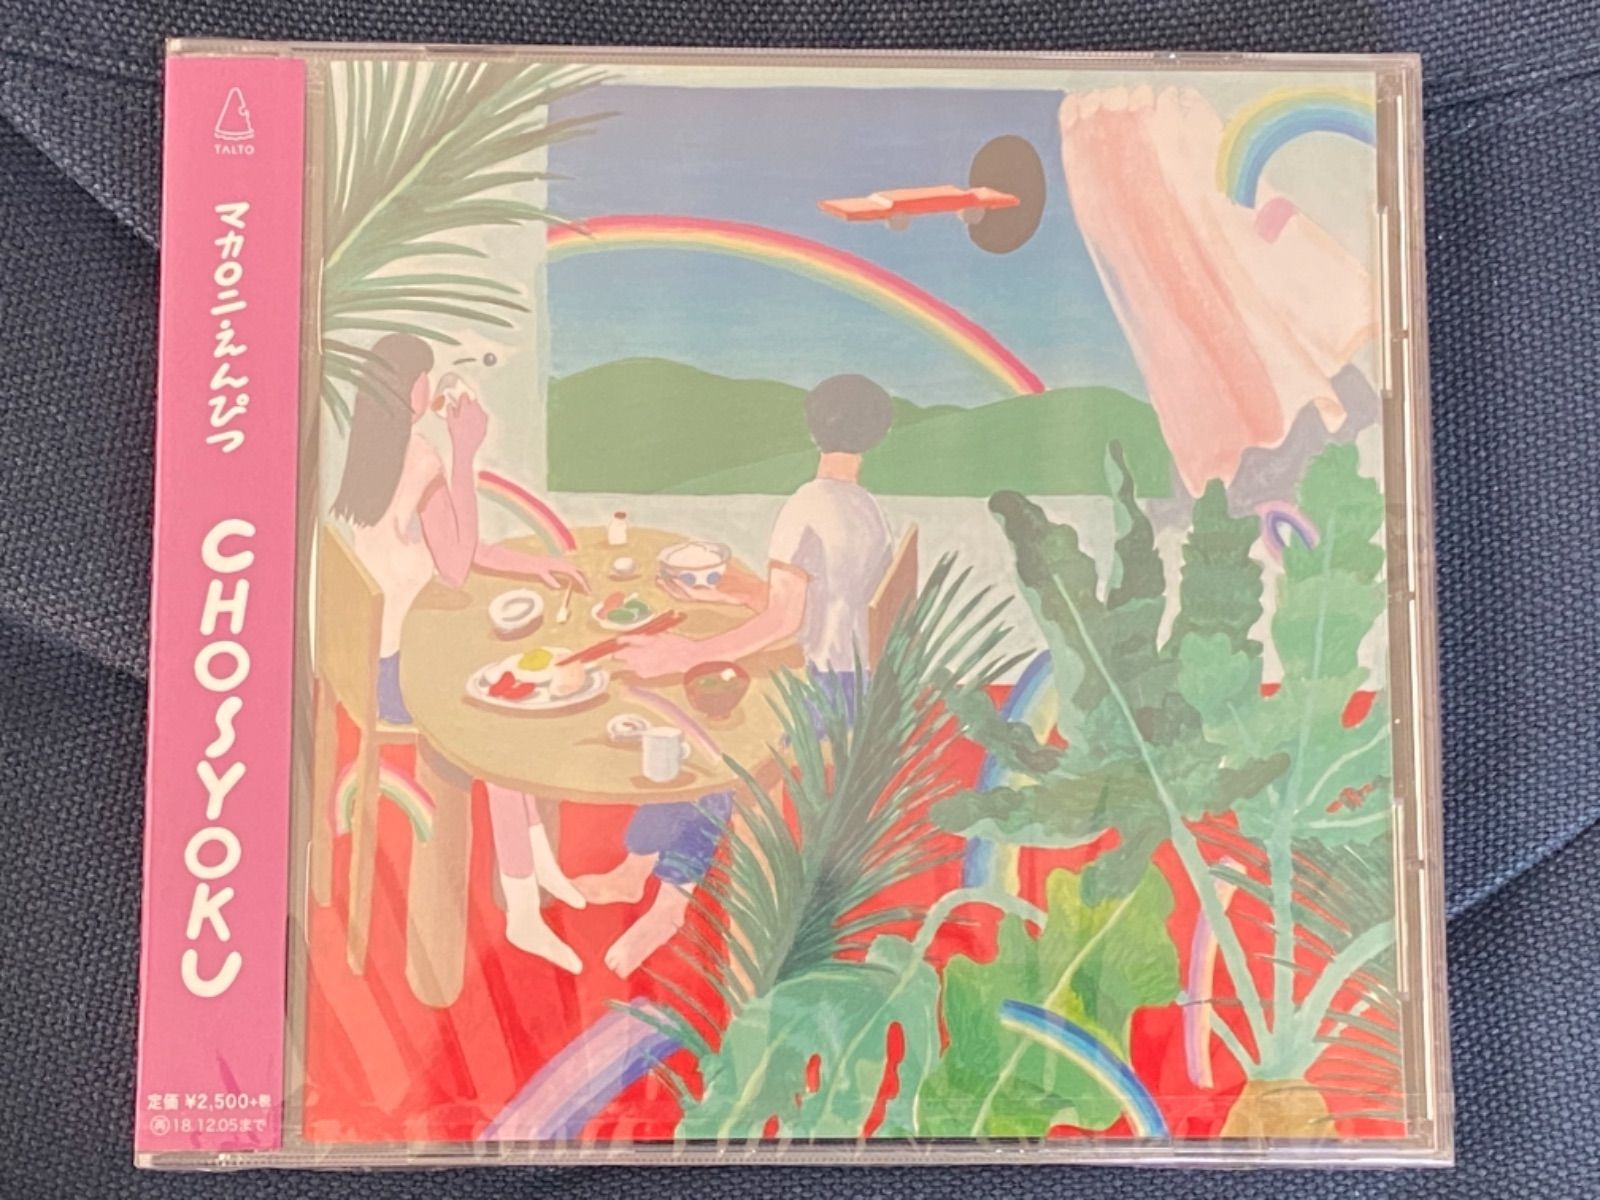 マカロニえんぴつ CHOSYOKU - DISC Record - メルカリ